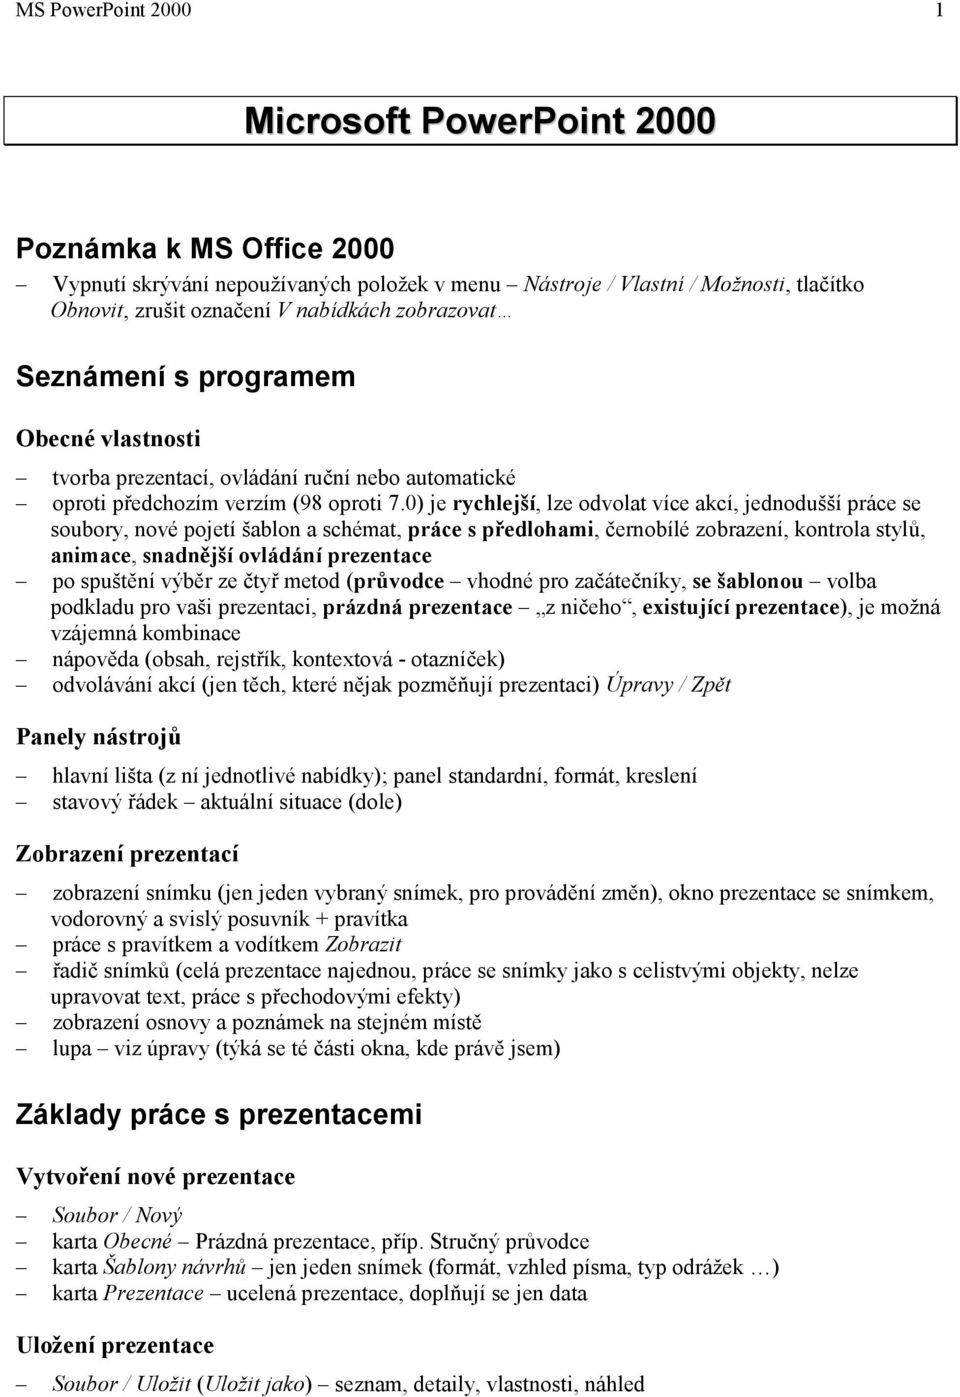 MS PowerPoint hlavní lišta (z ní jednotlivé nabídky); panel standardní,  formát, kreslení stavový řádek aktuální situace (dole) - PDF Free Download